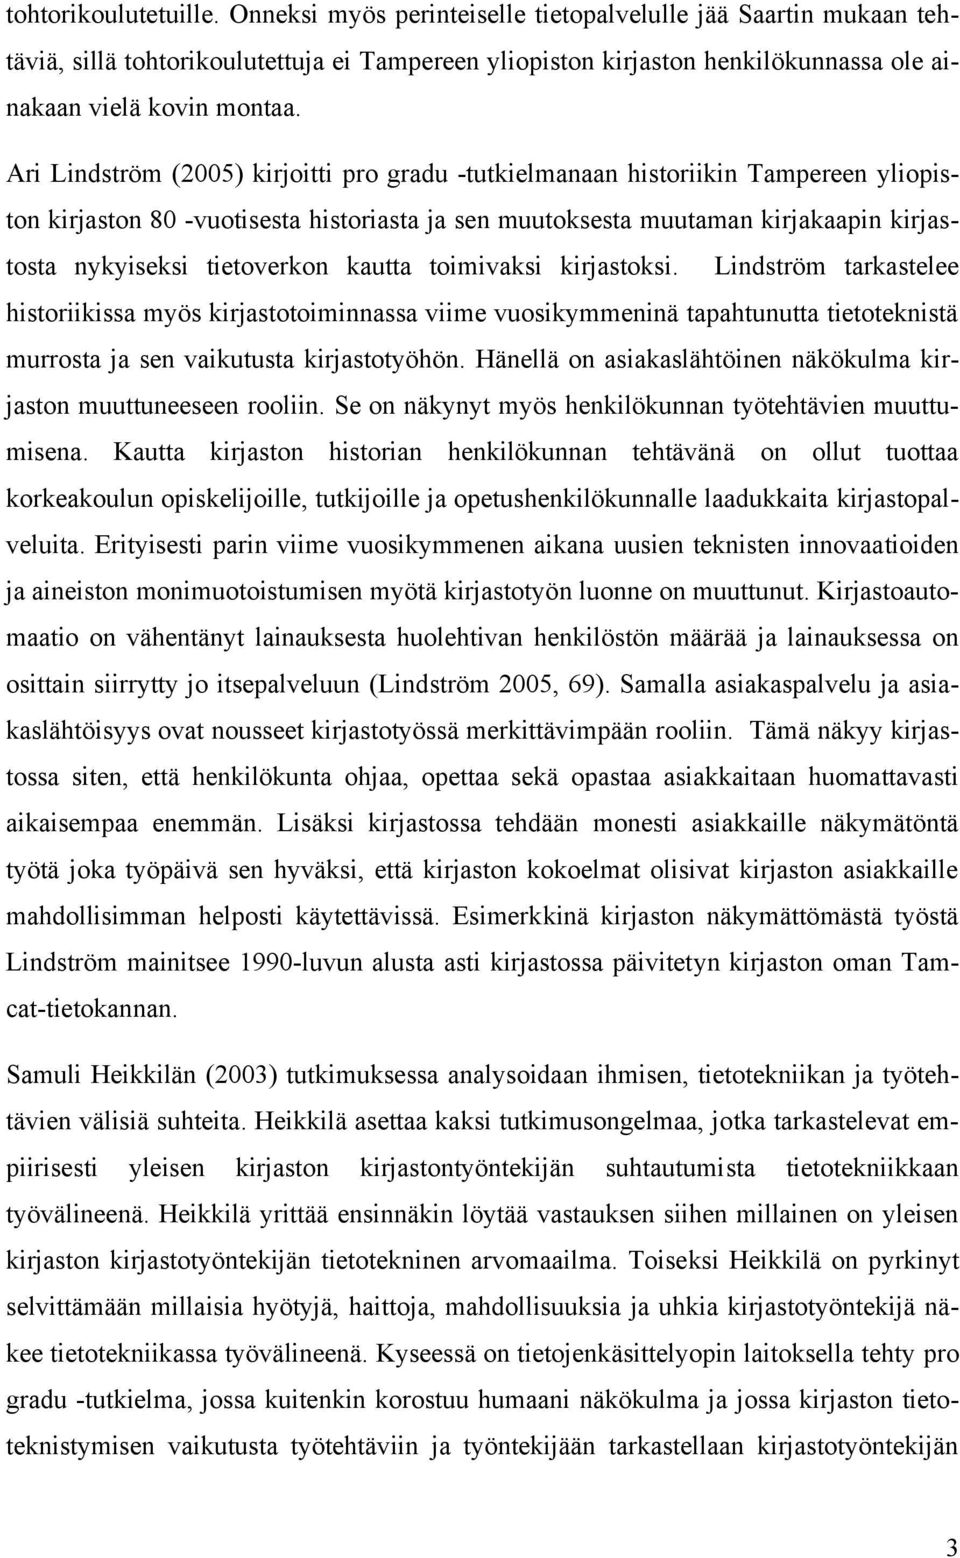 Ari Lindström (2005) kirjoitti pro gradu -tutkielmanaan historiikin Tampereen yliopiston kirjaston 80 -vuotisesta historiasta ja sen muutoksesta muutaman kirjakaapin kirjastosta nykyiseksi